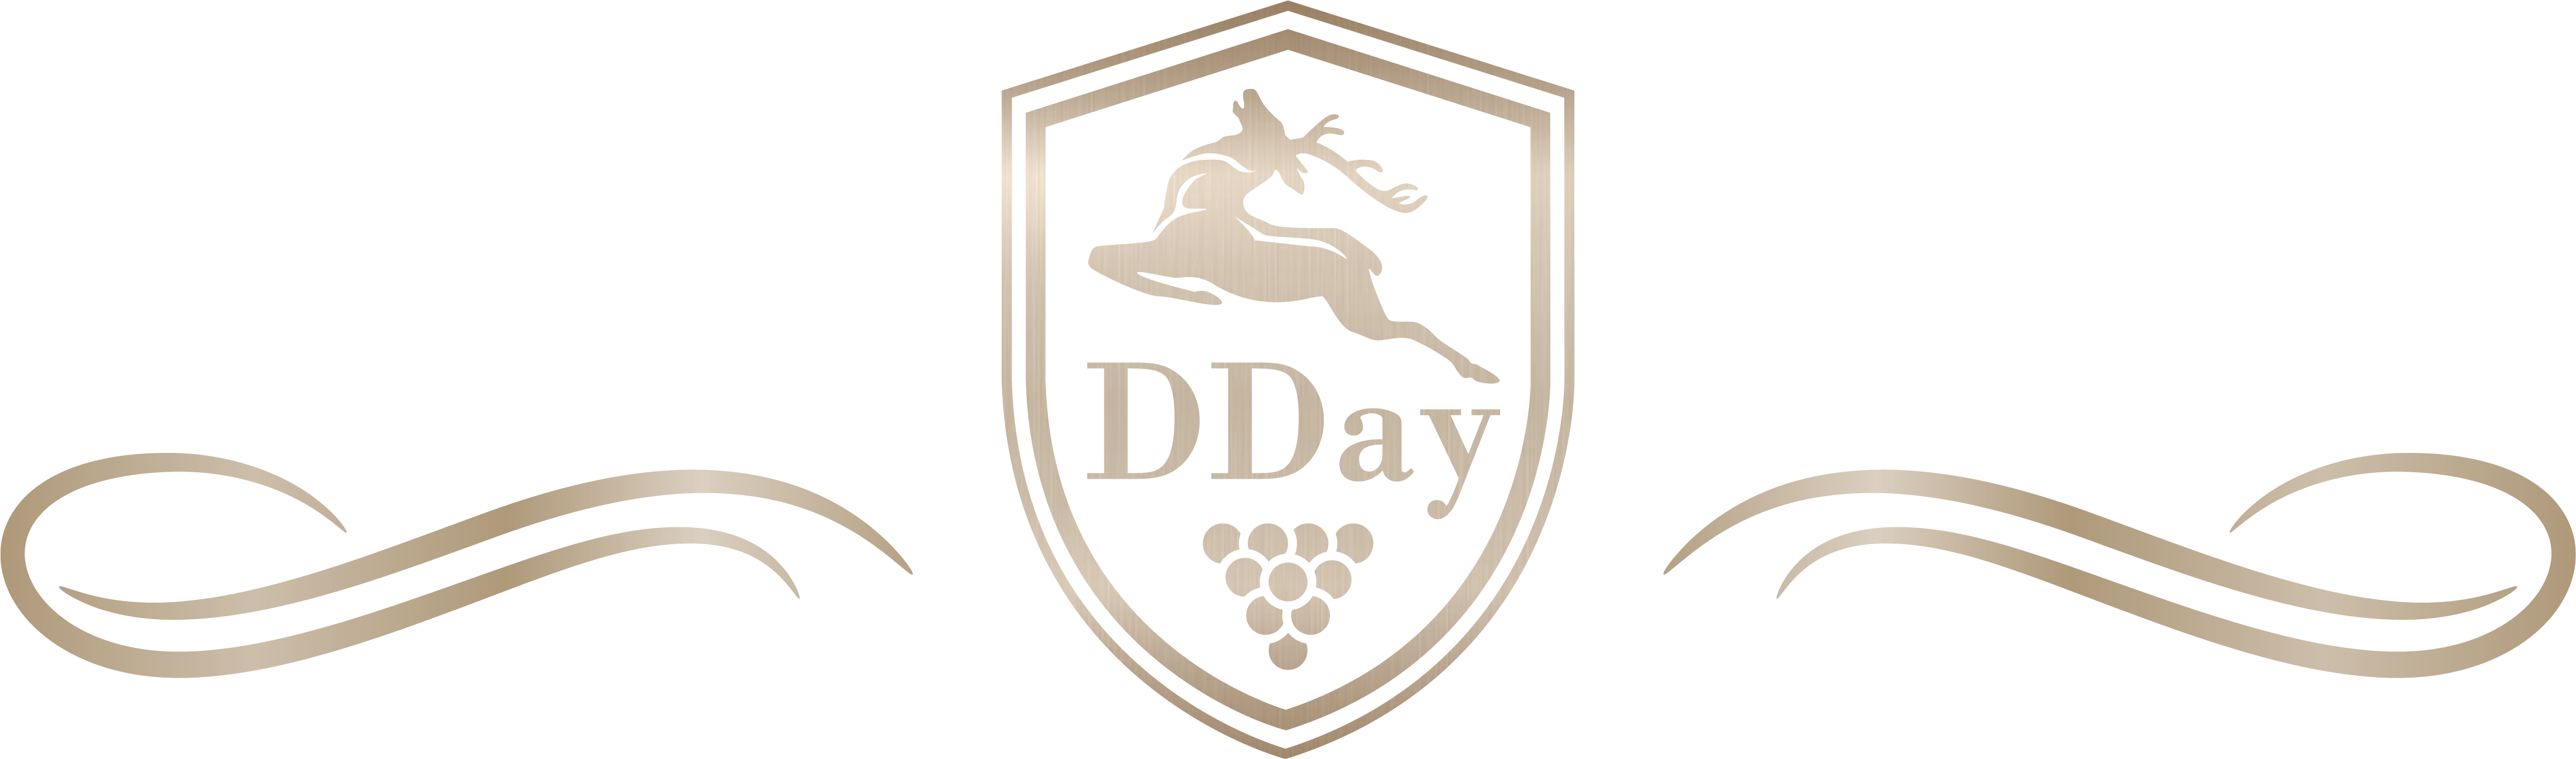 Dday - DDay Logo Wappen champagner Schwung